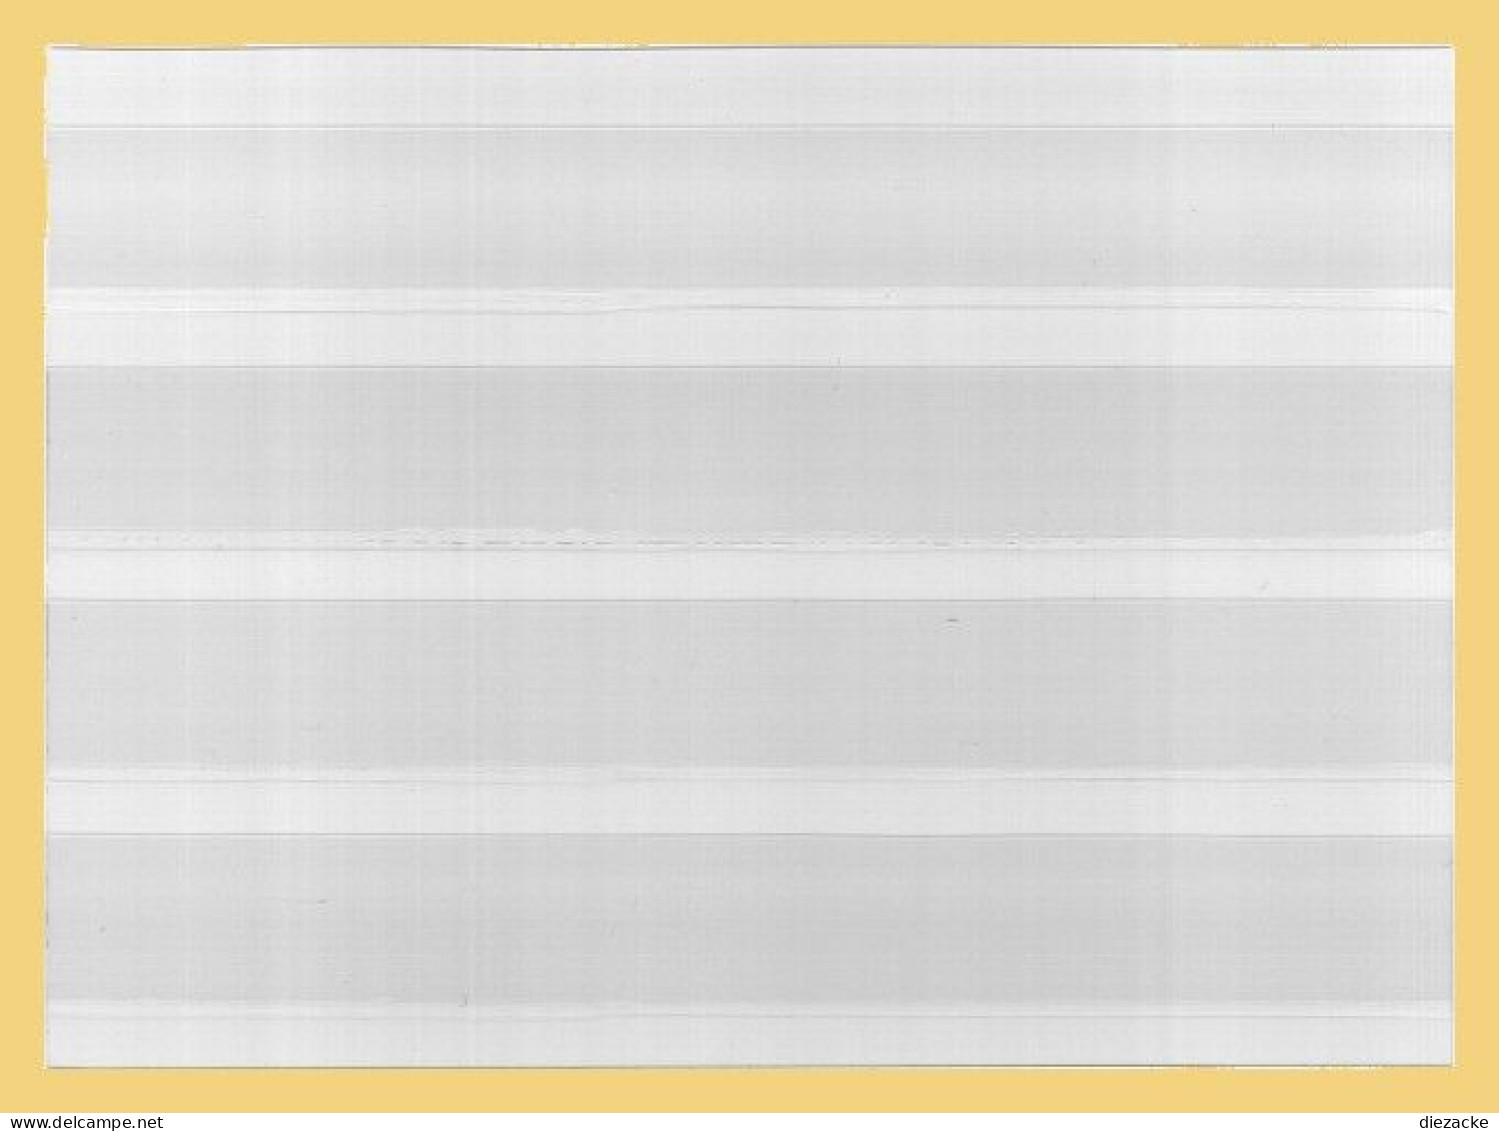 Kobra Steckkarten Glasklar Mit 4 Streifen VK4T, 100 Stück Neu ( - Tarjetas De Almacenamiento